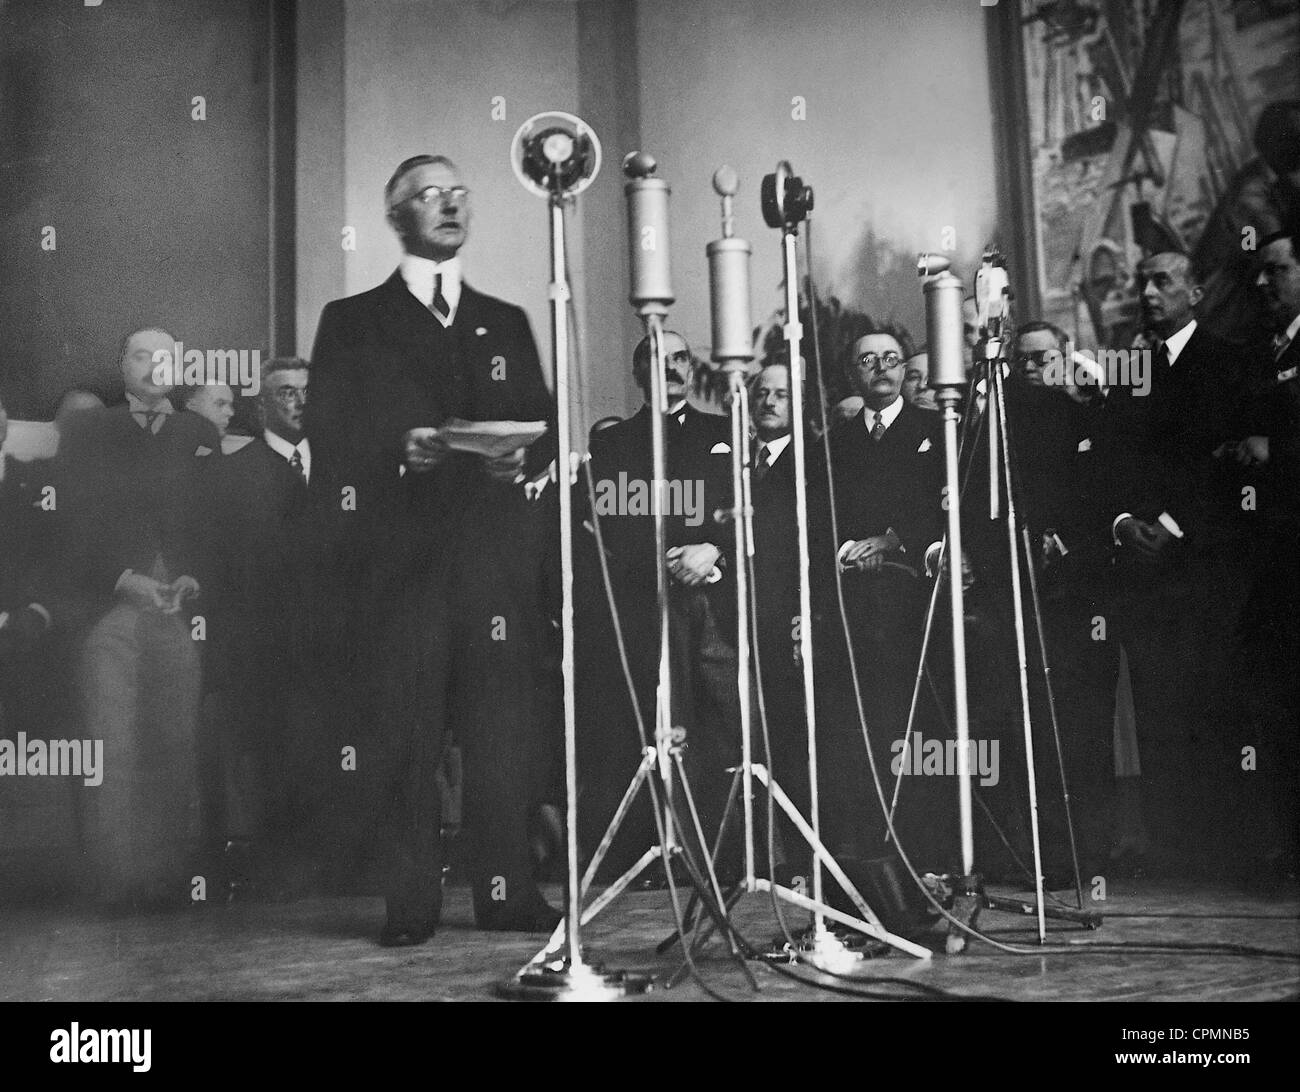 Hjalmar Schacht in apertura del Padiglione Tedesco, 1937 Foto Stock